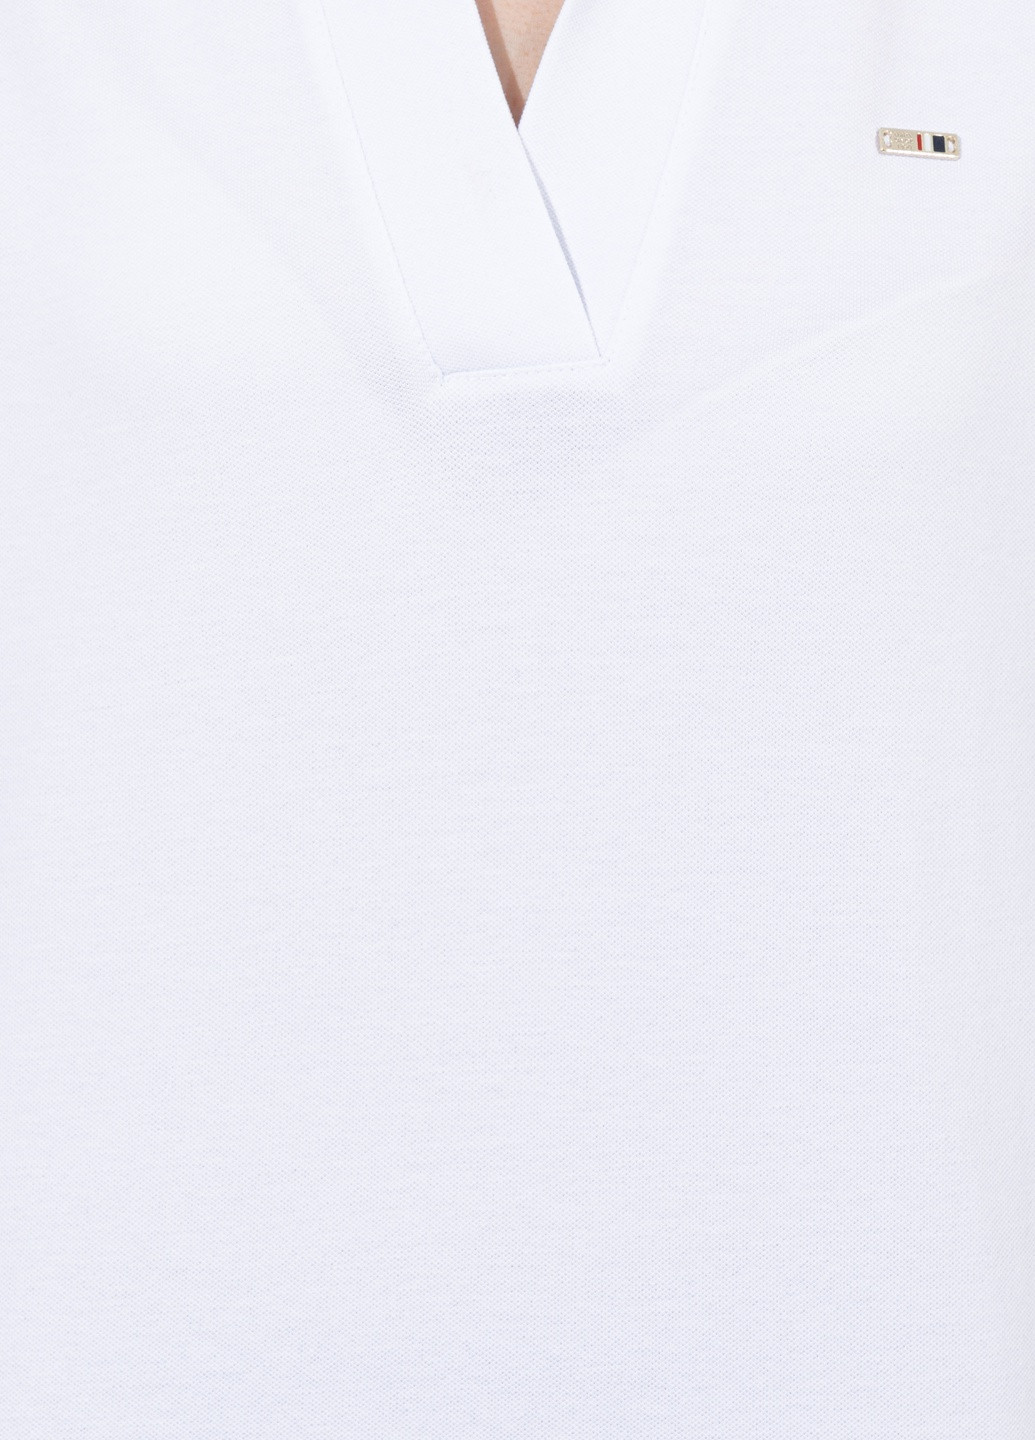 Белая женская футболка-футболка u.s/ polo assn. женская U.S. Polo Assn.